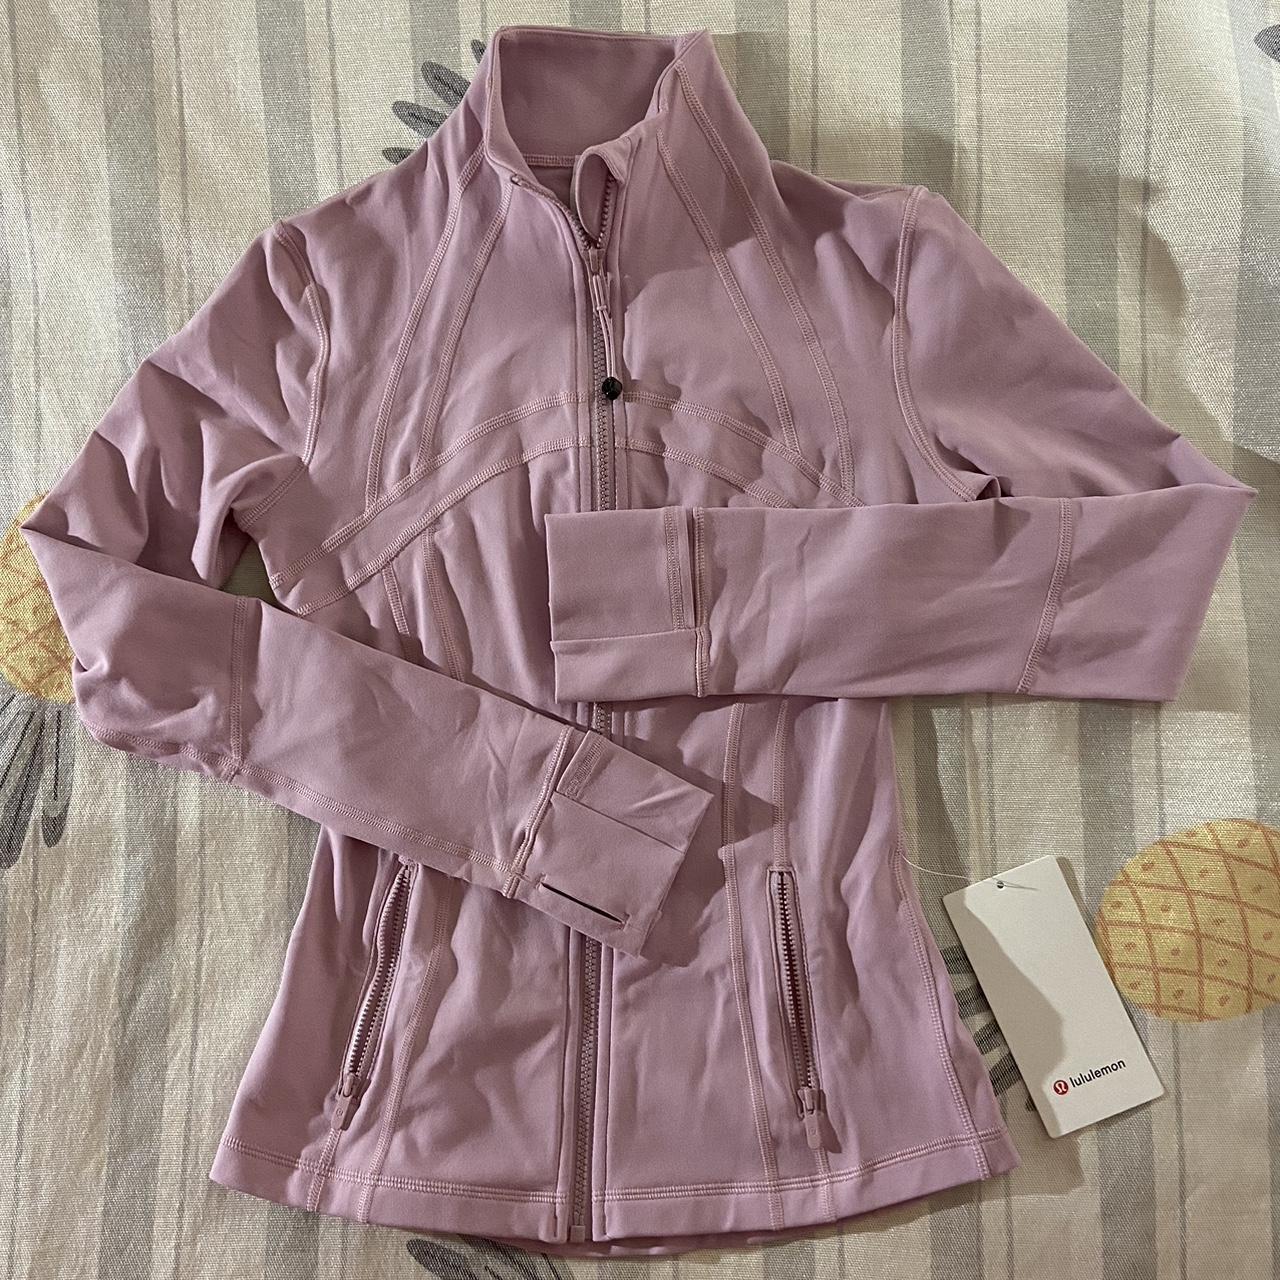 Lululemon Women's Pink Jacket | Depop